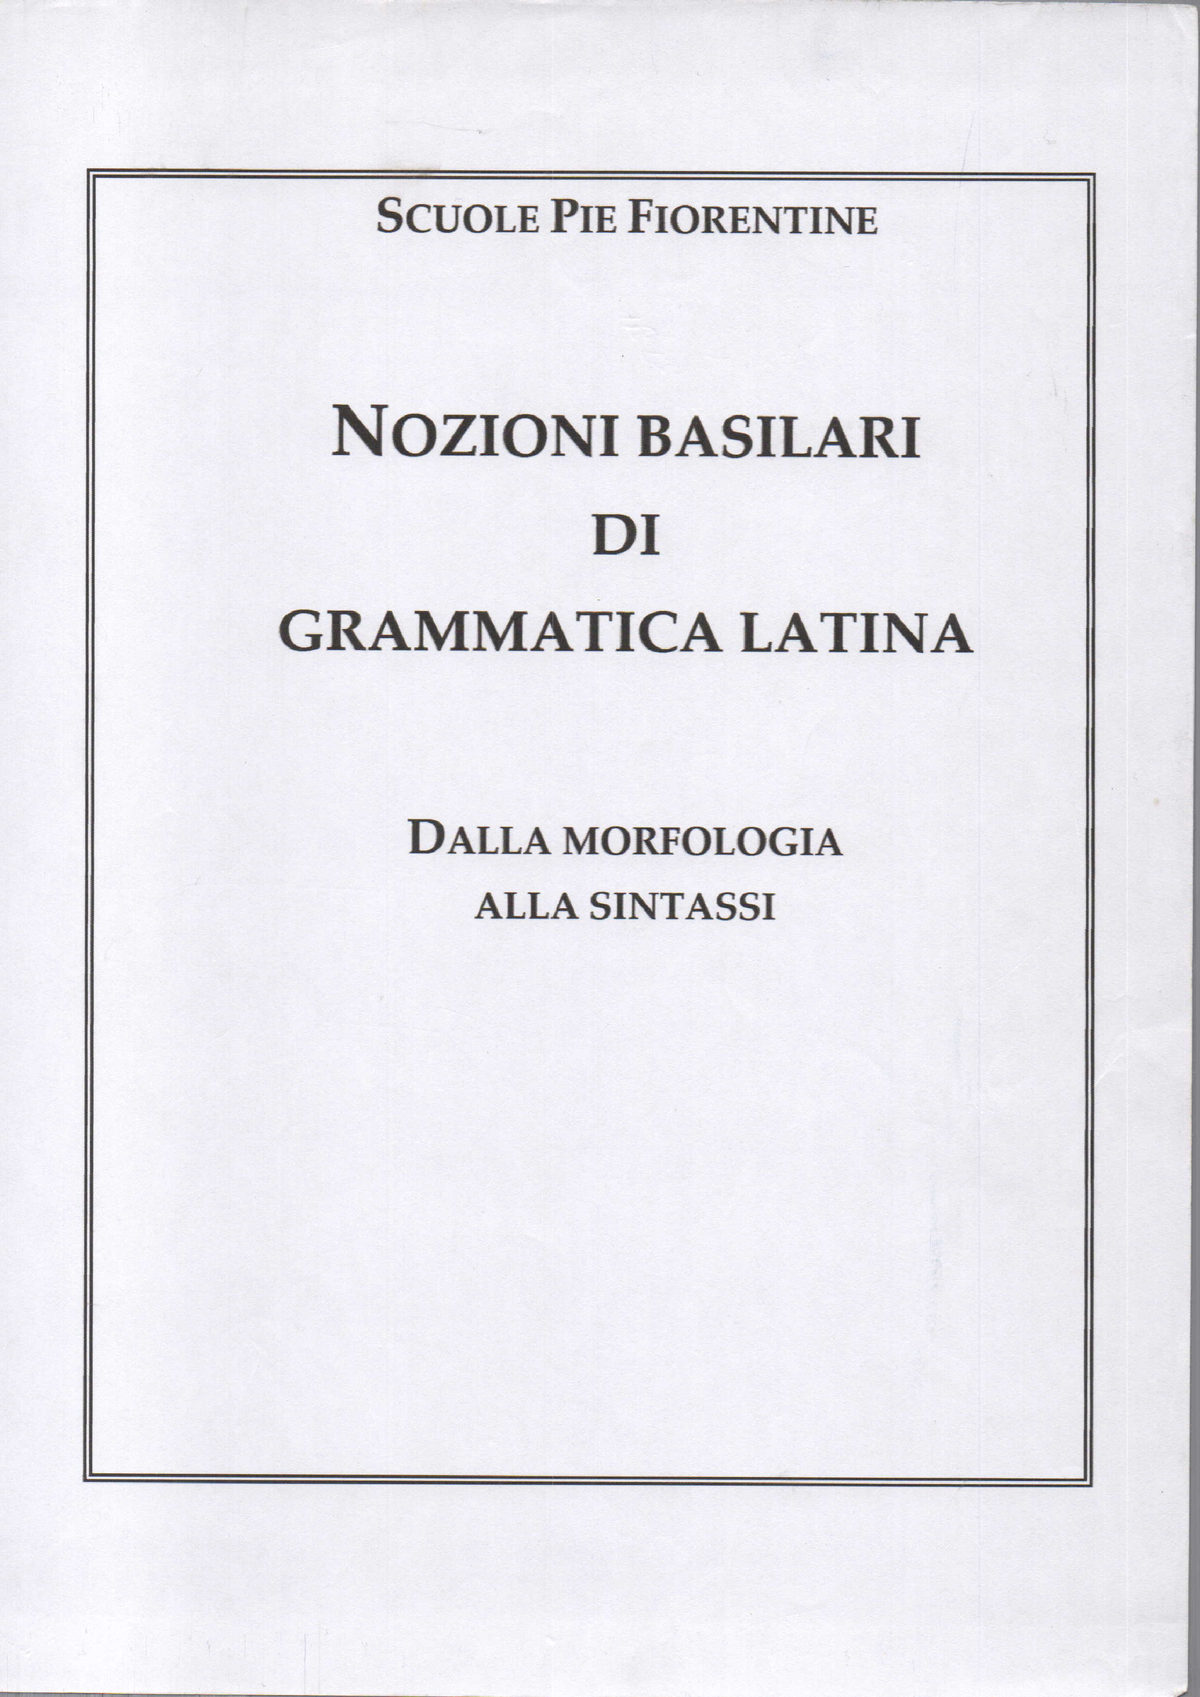 Grammatica-latina riassunto delle preposizioni latine - Studocu